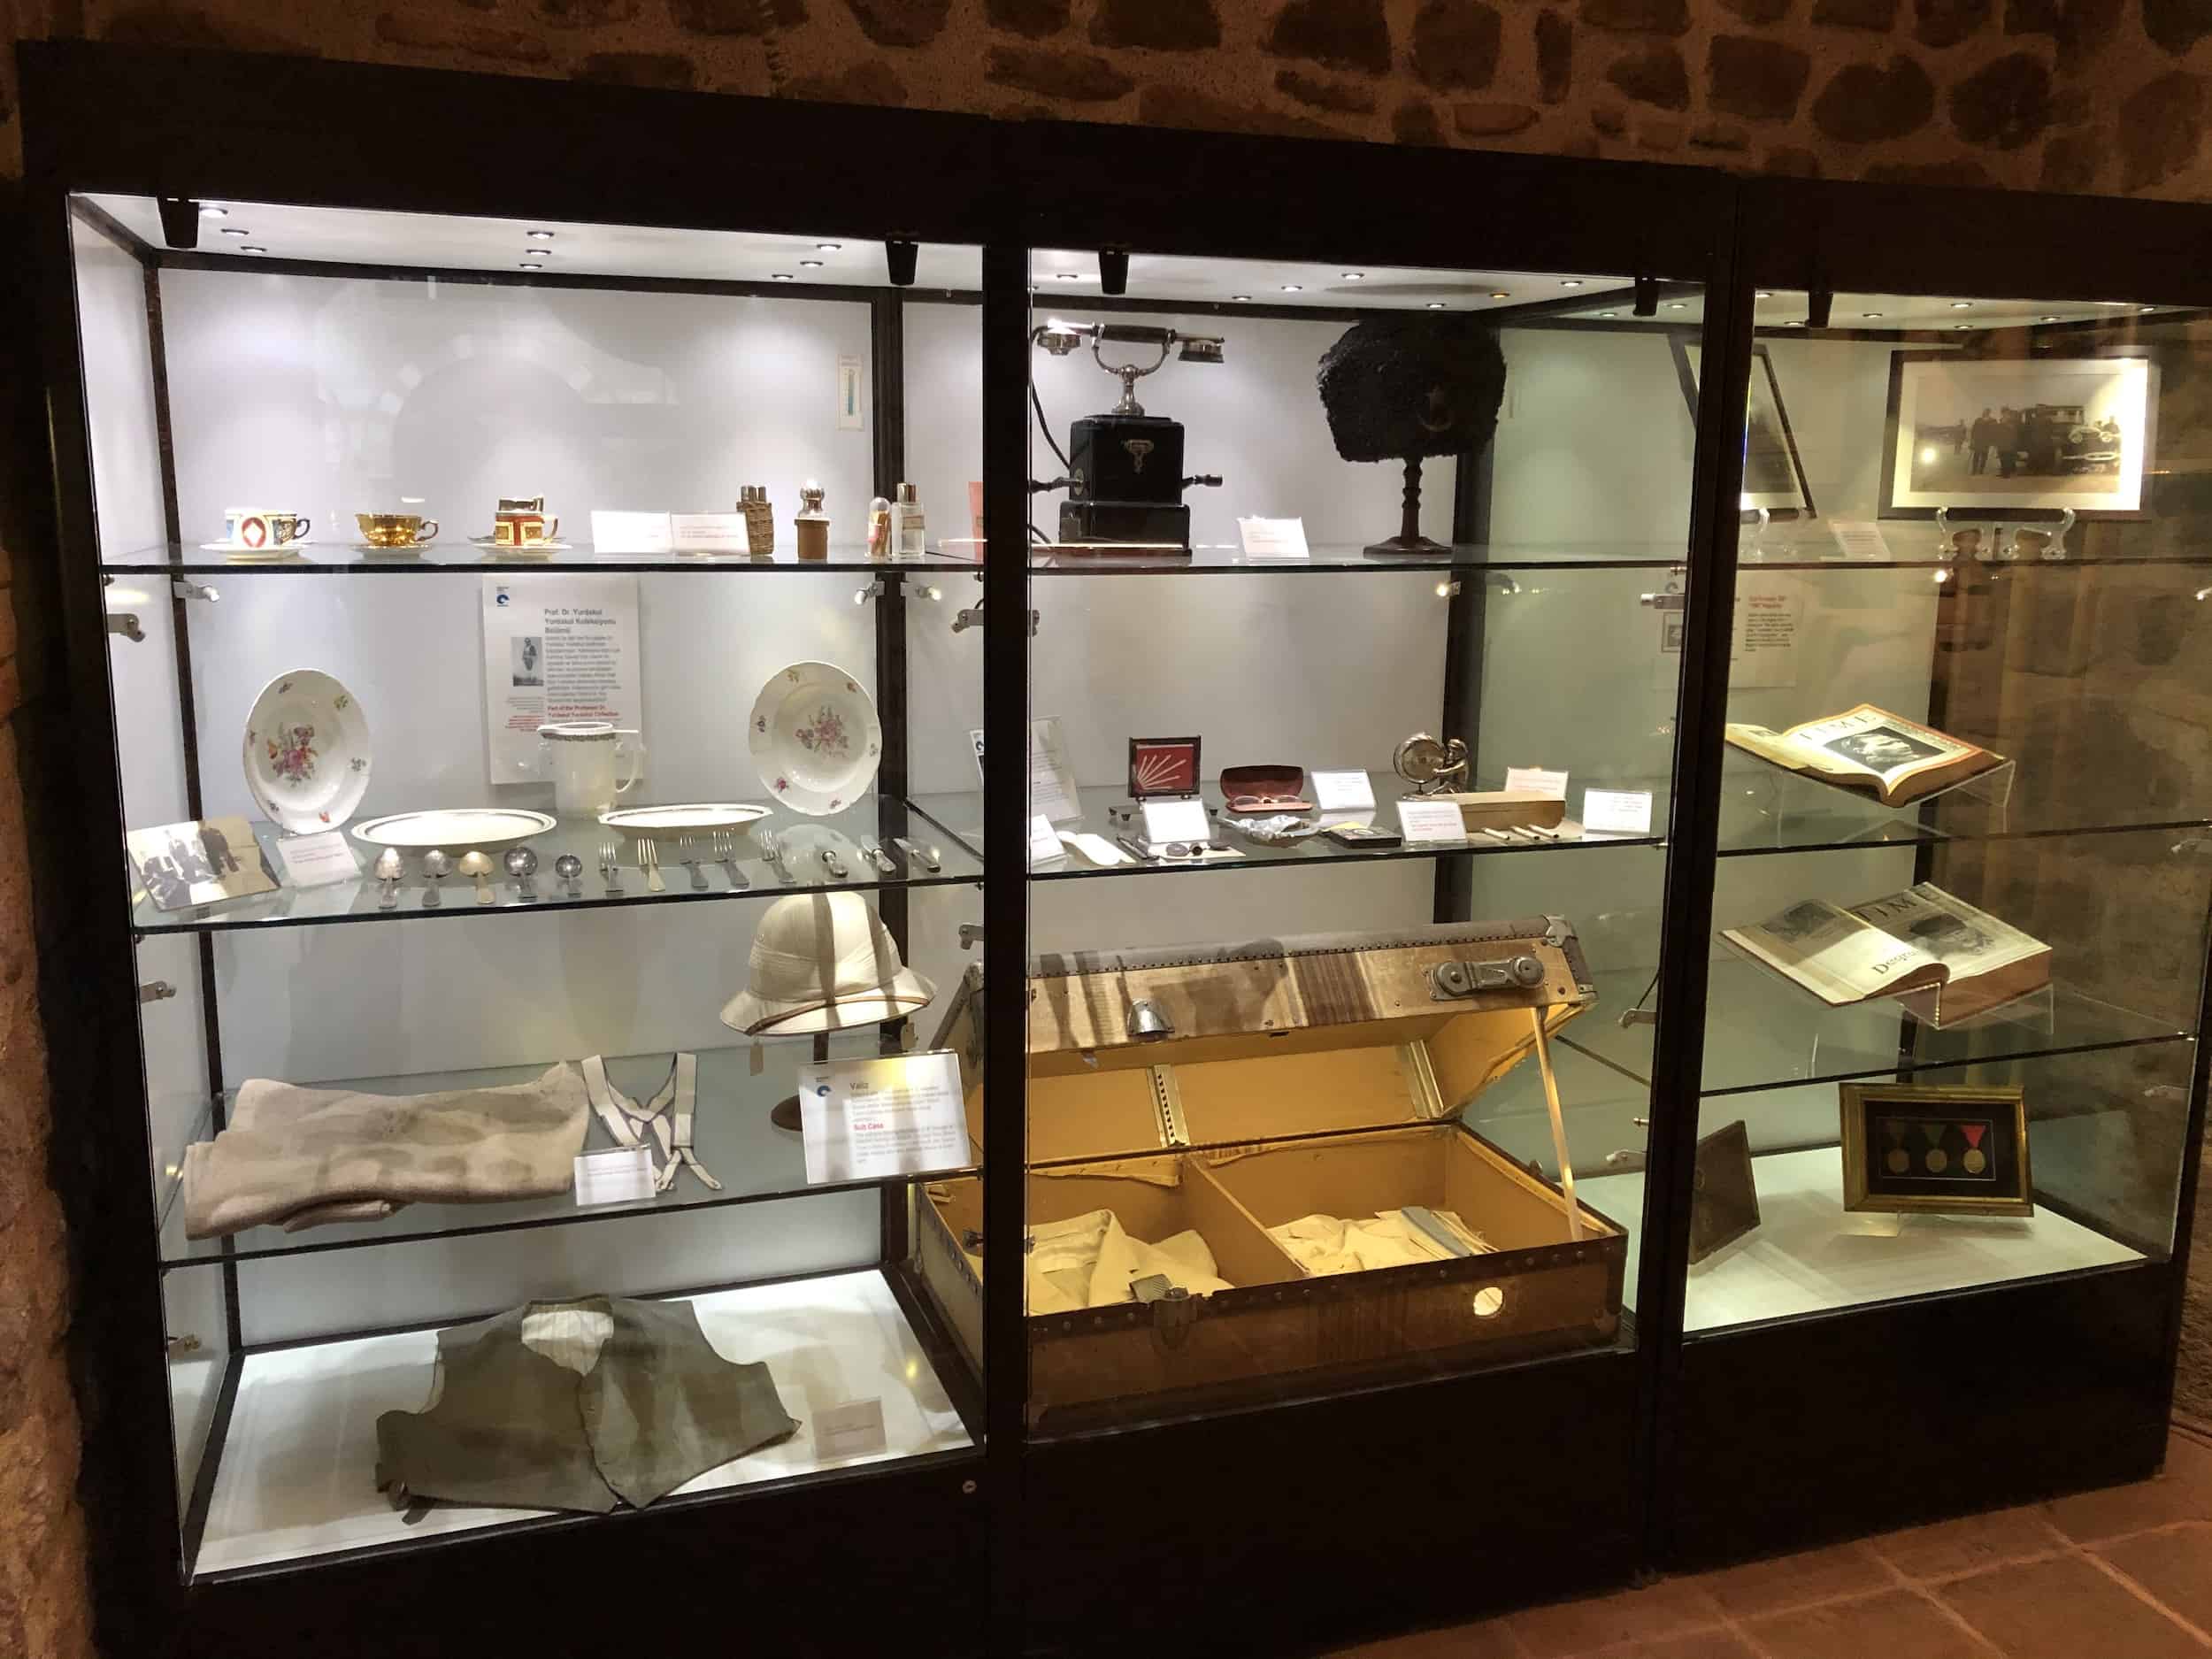 Atatürk's personal belongings at the Rahmi M. Koç Museum in Ankara, Turkey